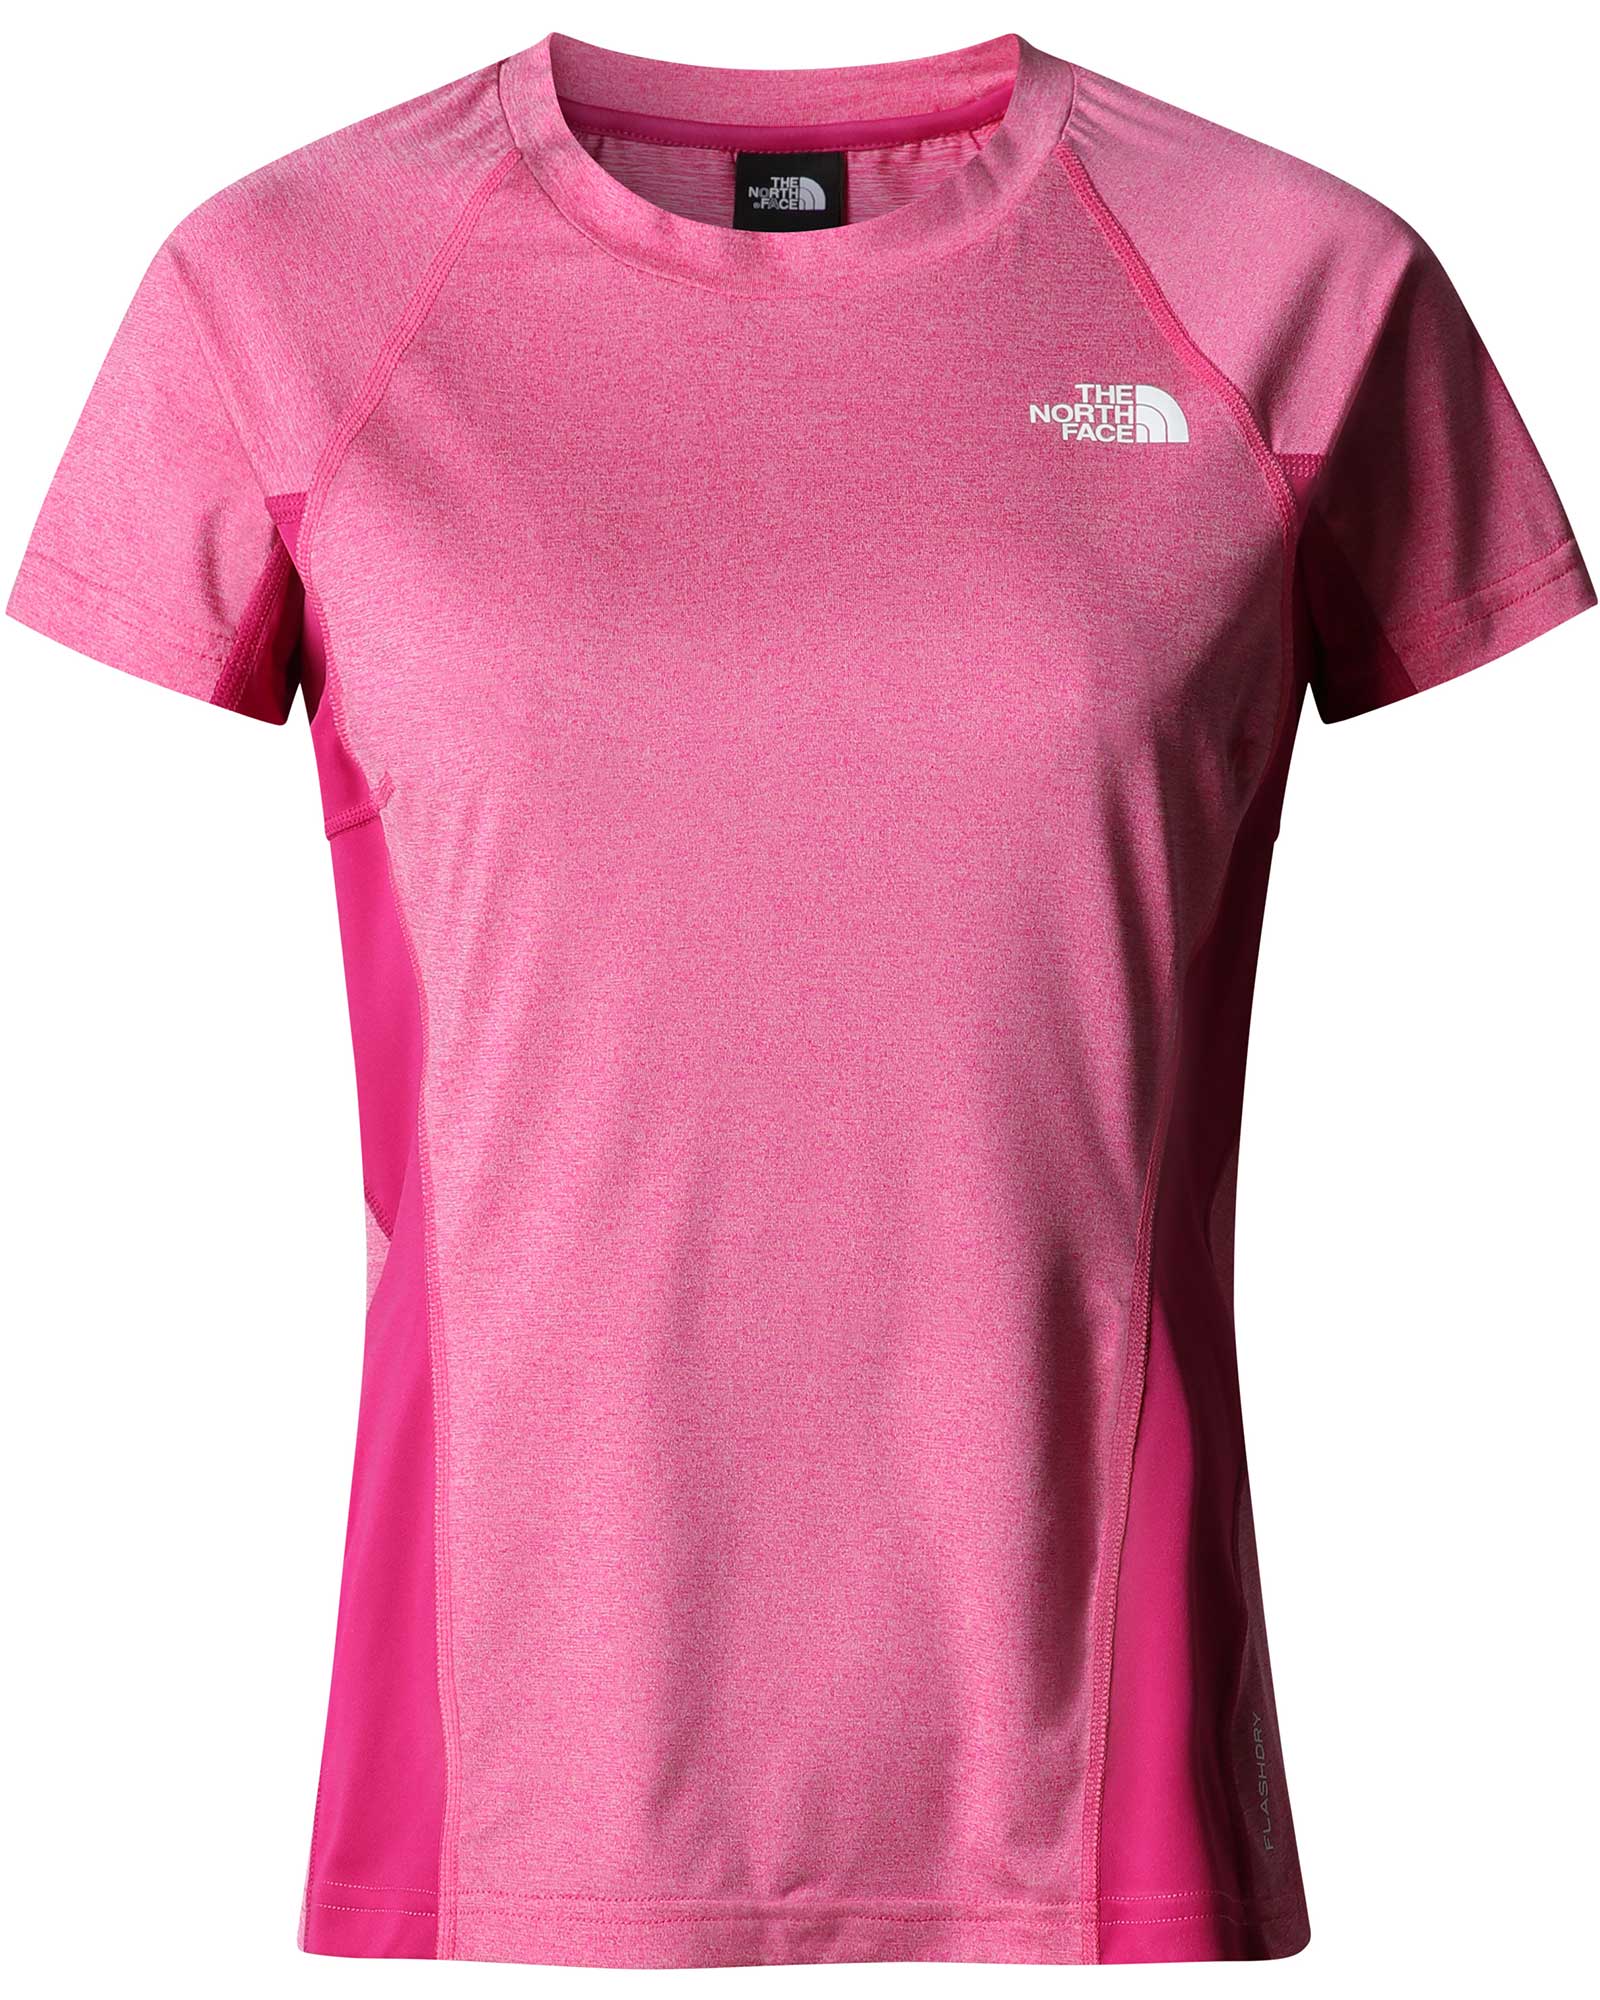 The North Face AO Women’s T Shirt - Fuschia Pink S